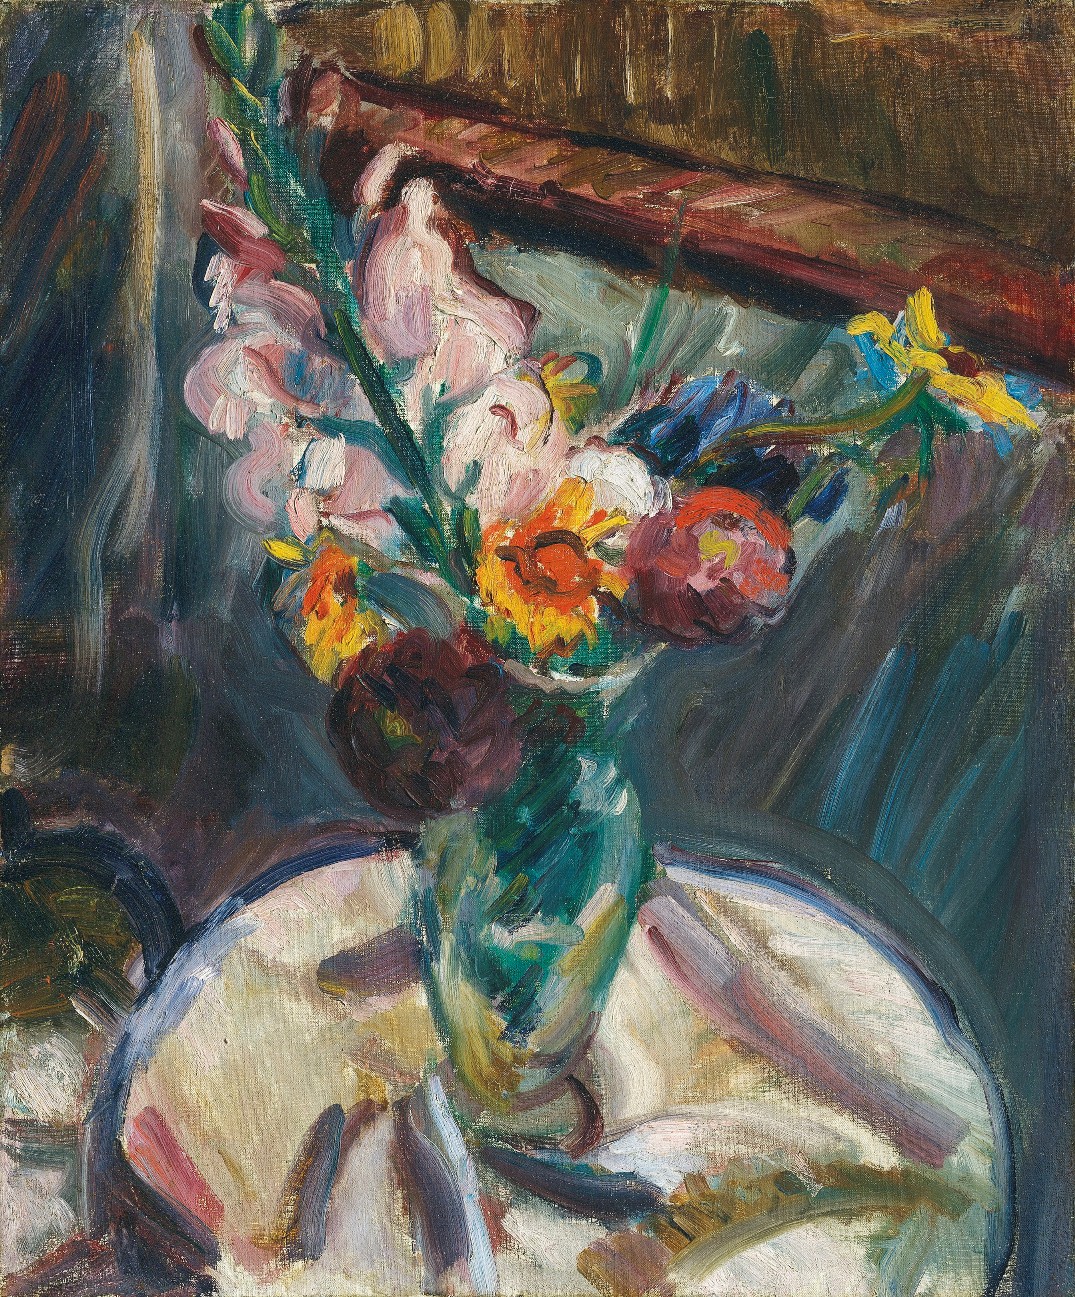 Matthew Smith (1879-1959), Gladioli in a Vase